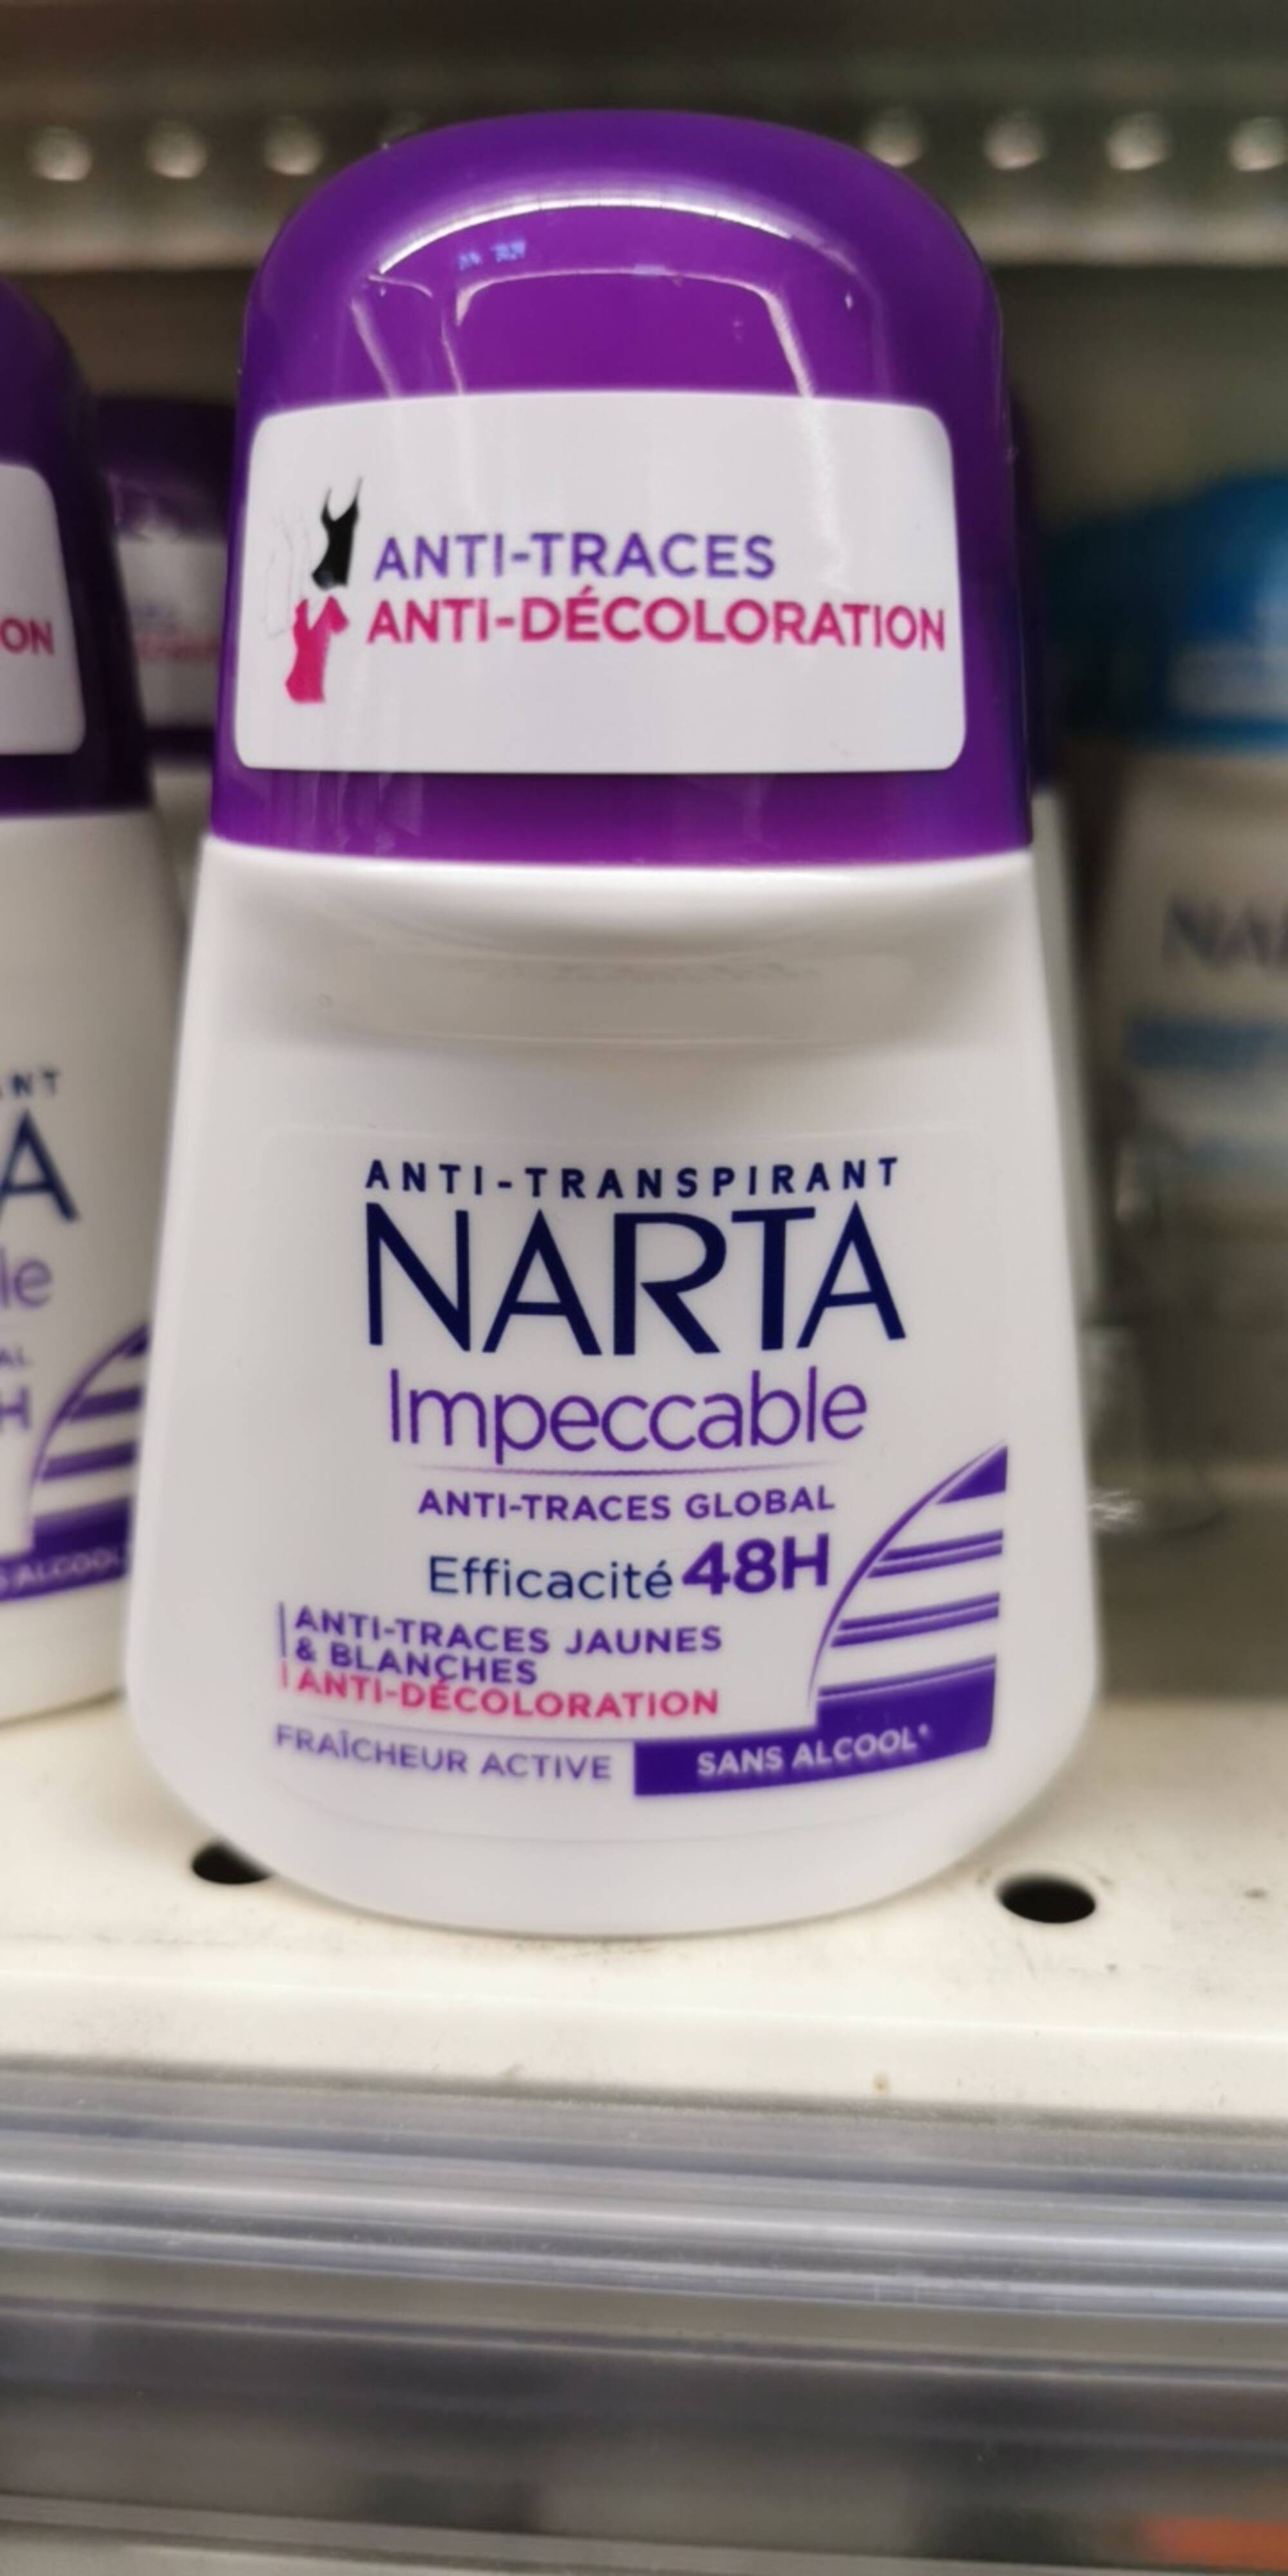 NARTA - Anti-traspirant impeccable anti-traces global 48h